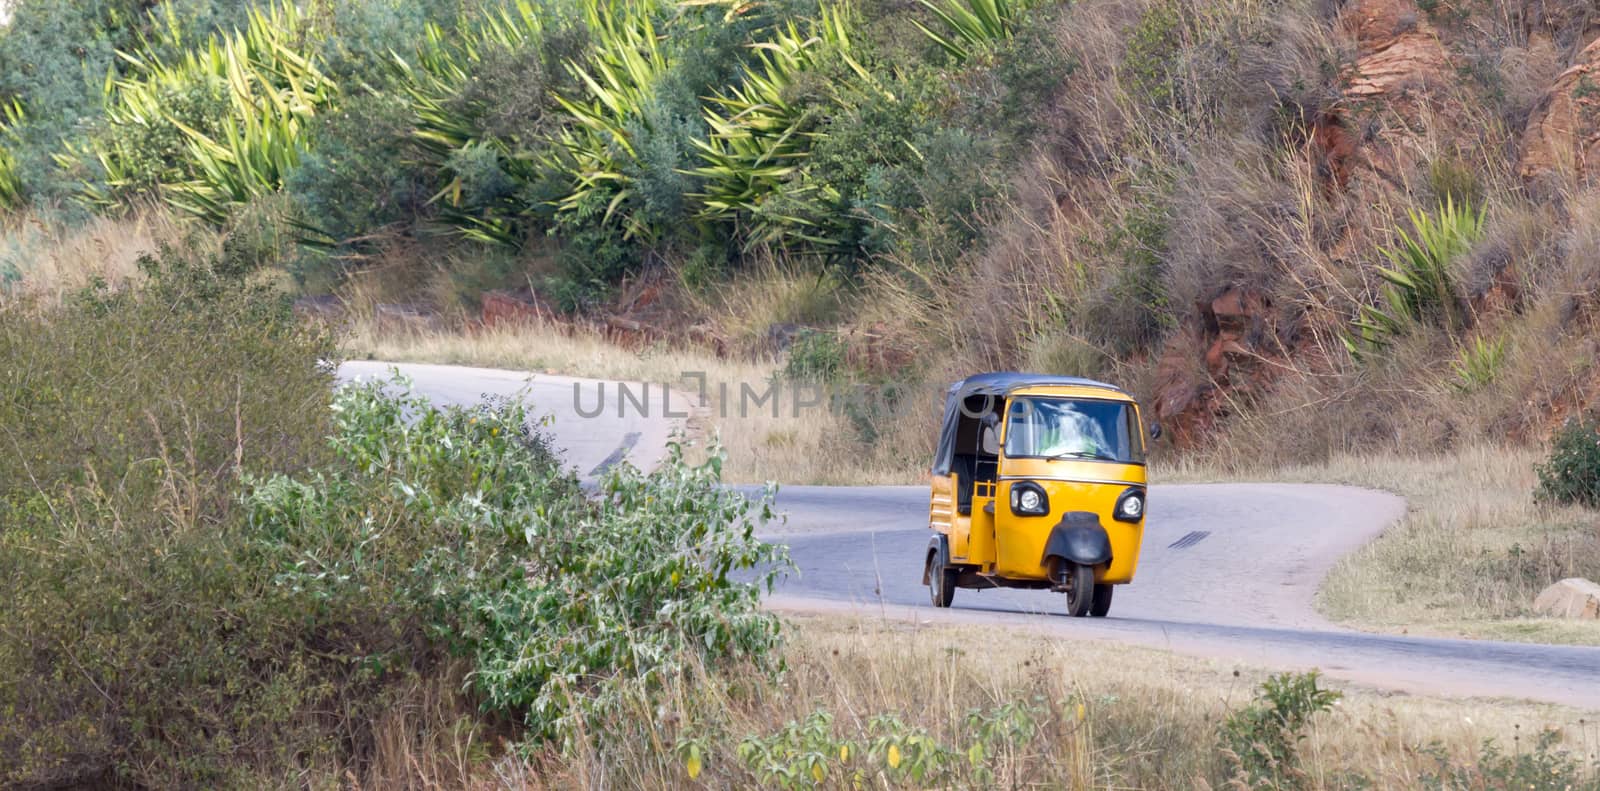 Tuktuk taxi on Madagascar, moving through the mountains